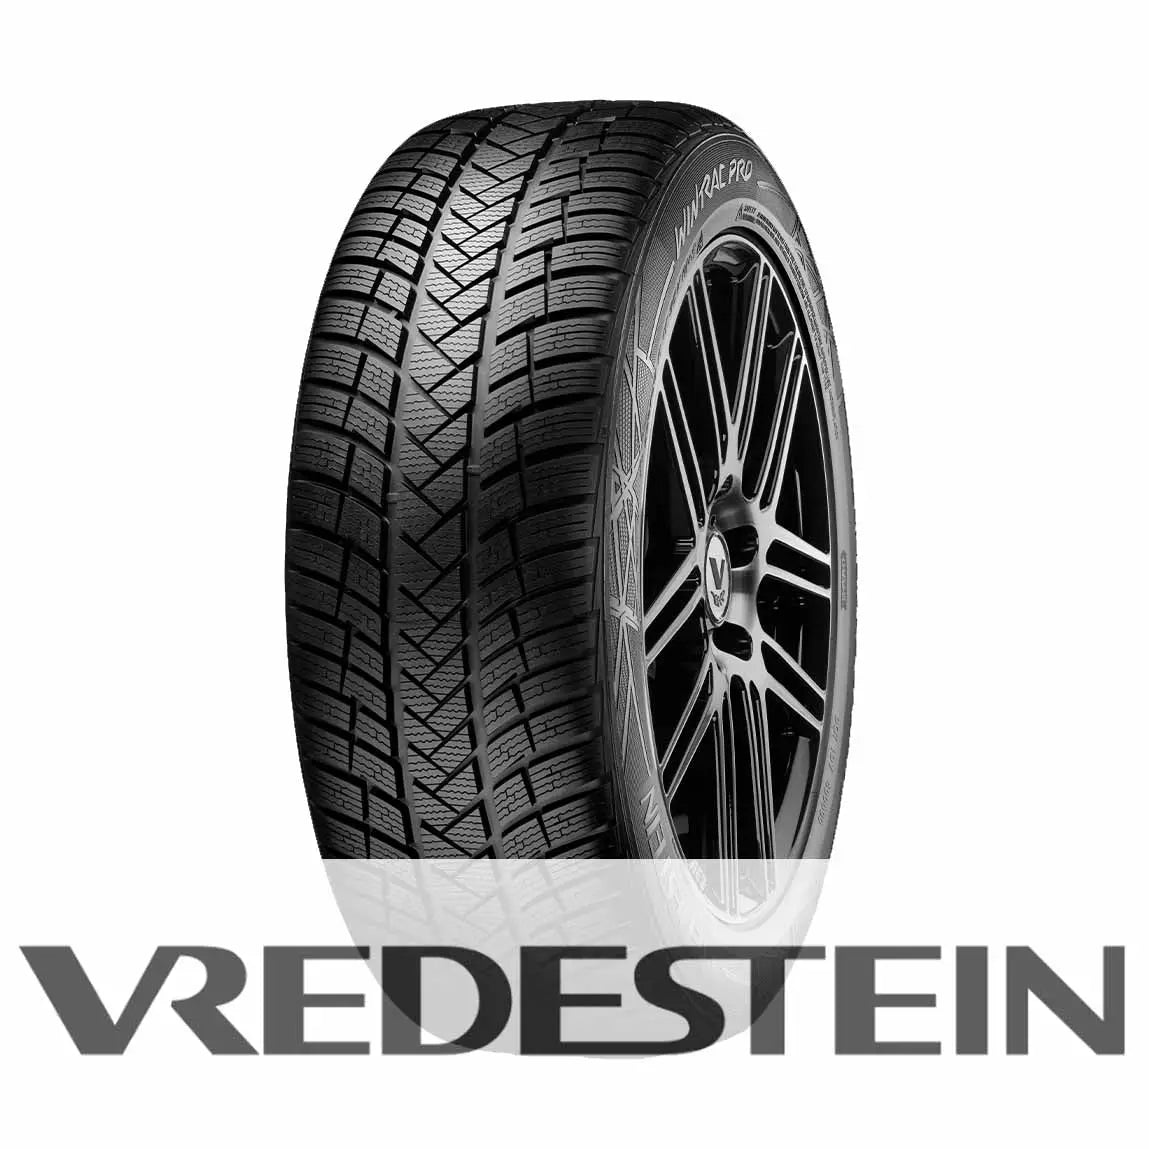 Vredestein Wintrac Pro 235/65 R17 108H XL Vredestein